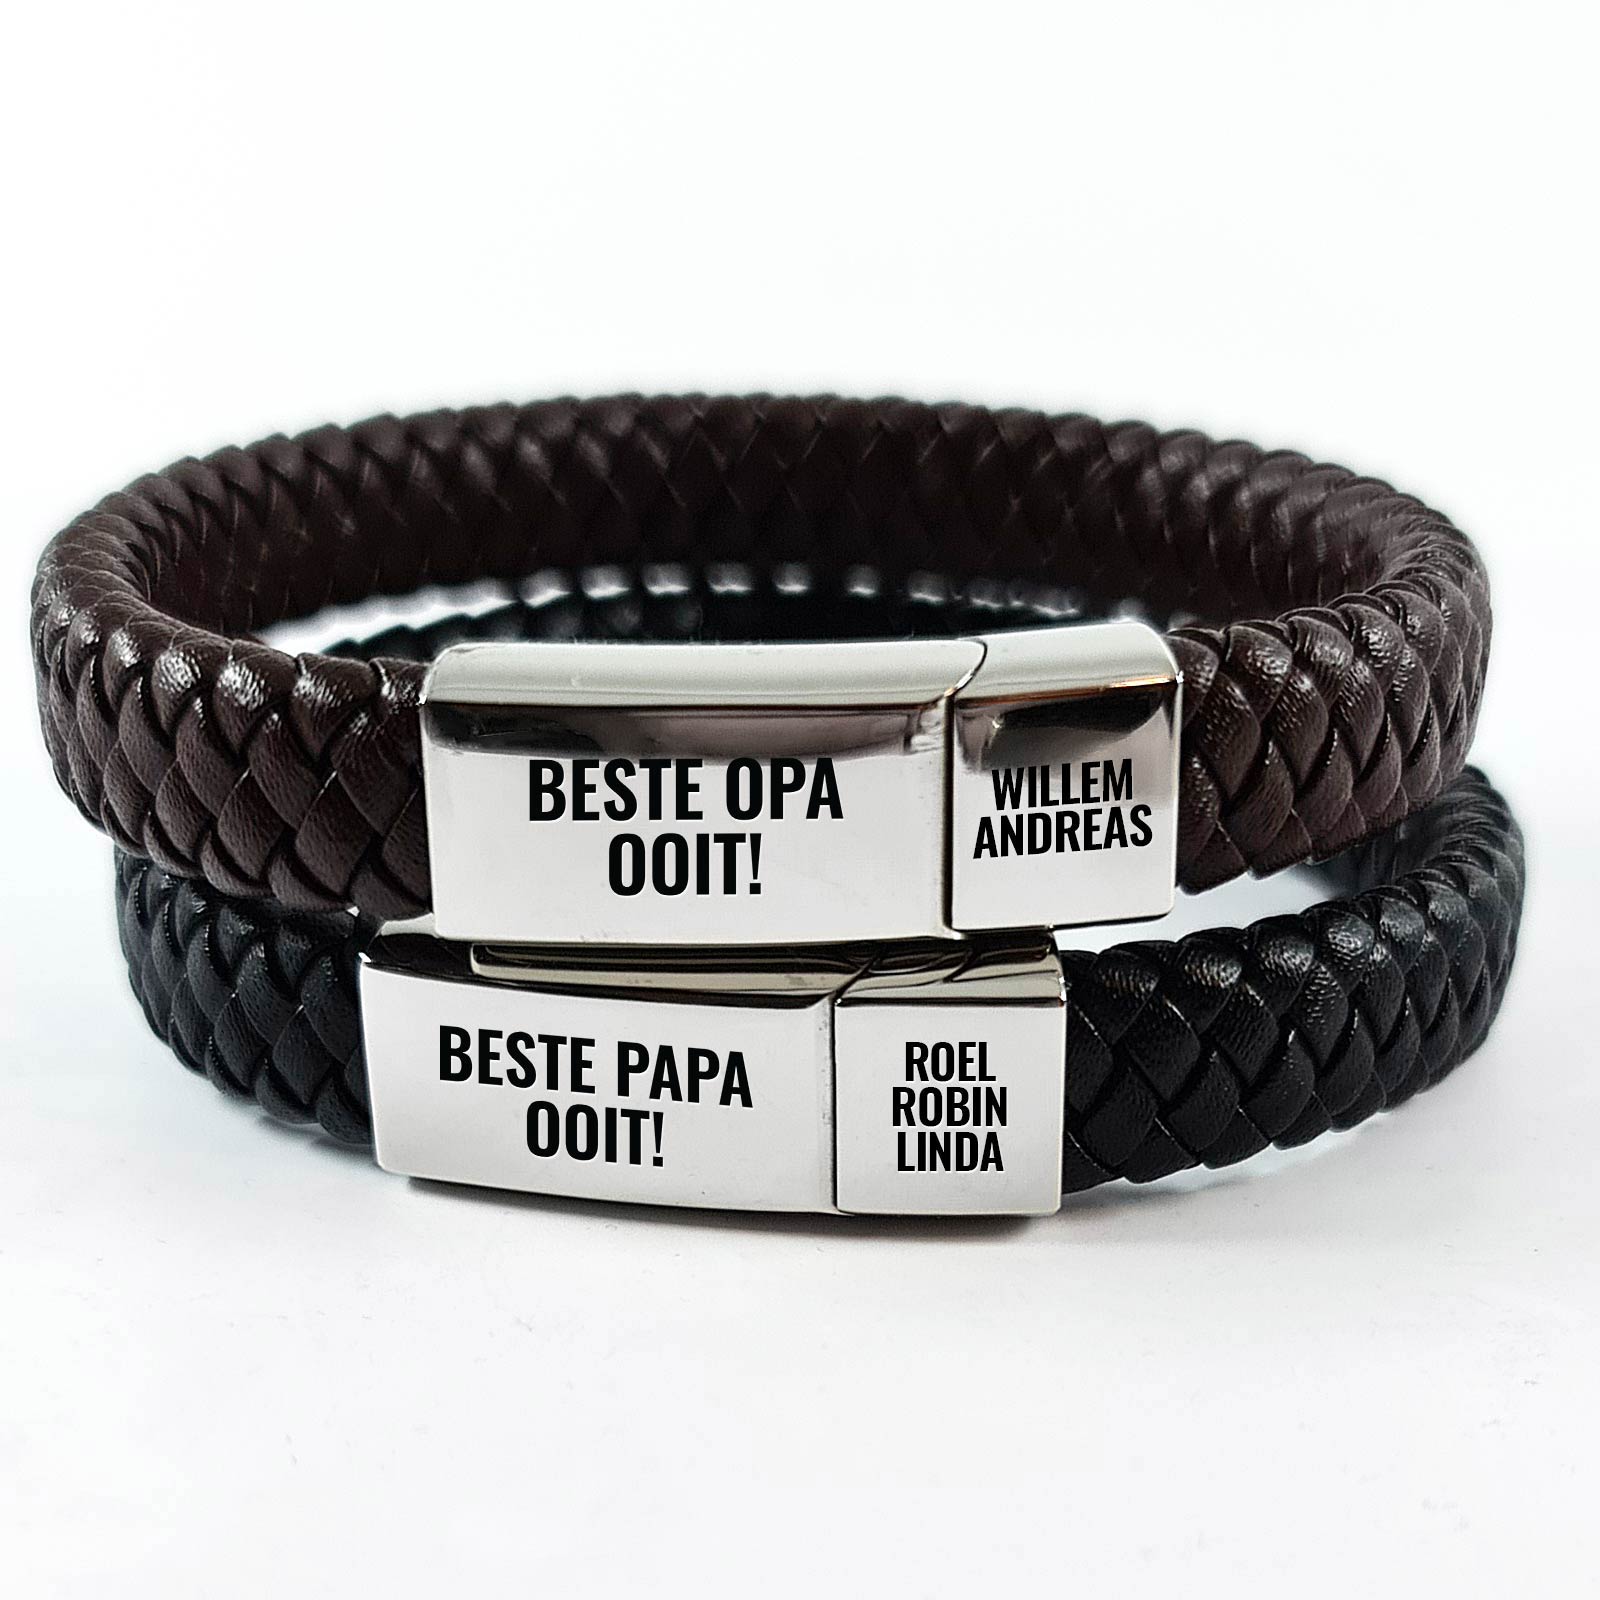 Gepersonaliseerde Armband voor Opa of Papa - Bella Mia